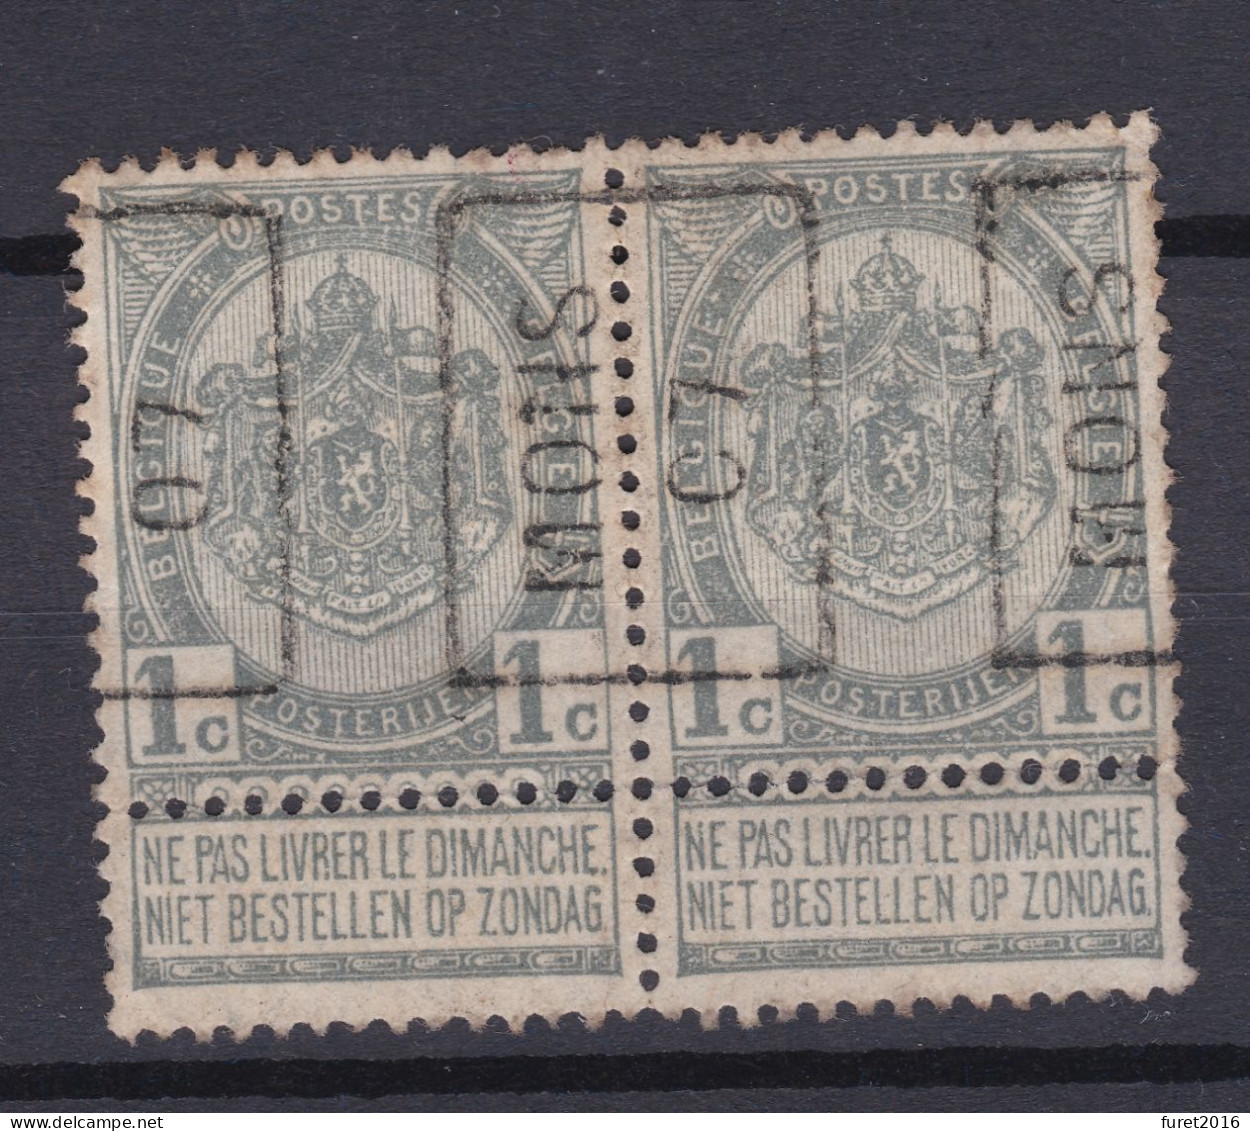 N° 53 PREO MONS 07   X Gomme Avec Charniere De Soutien A La Bandelette - Rolstempels 1900-09